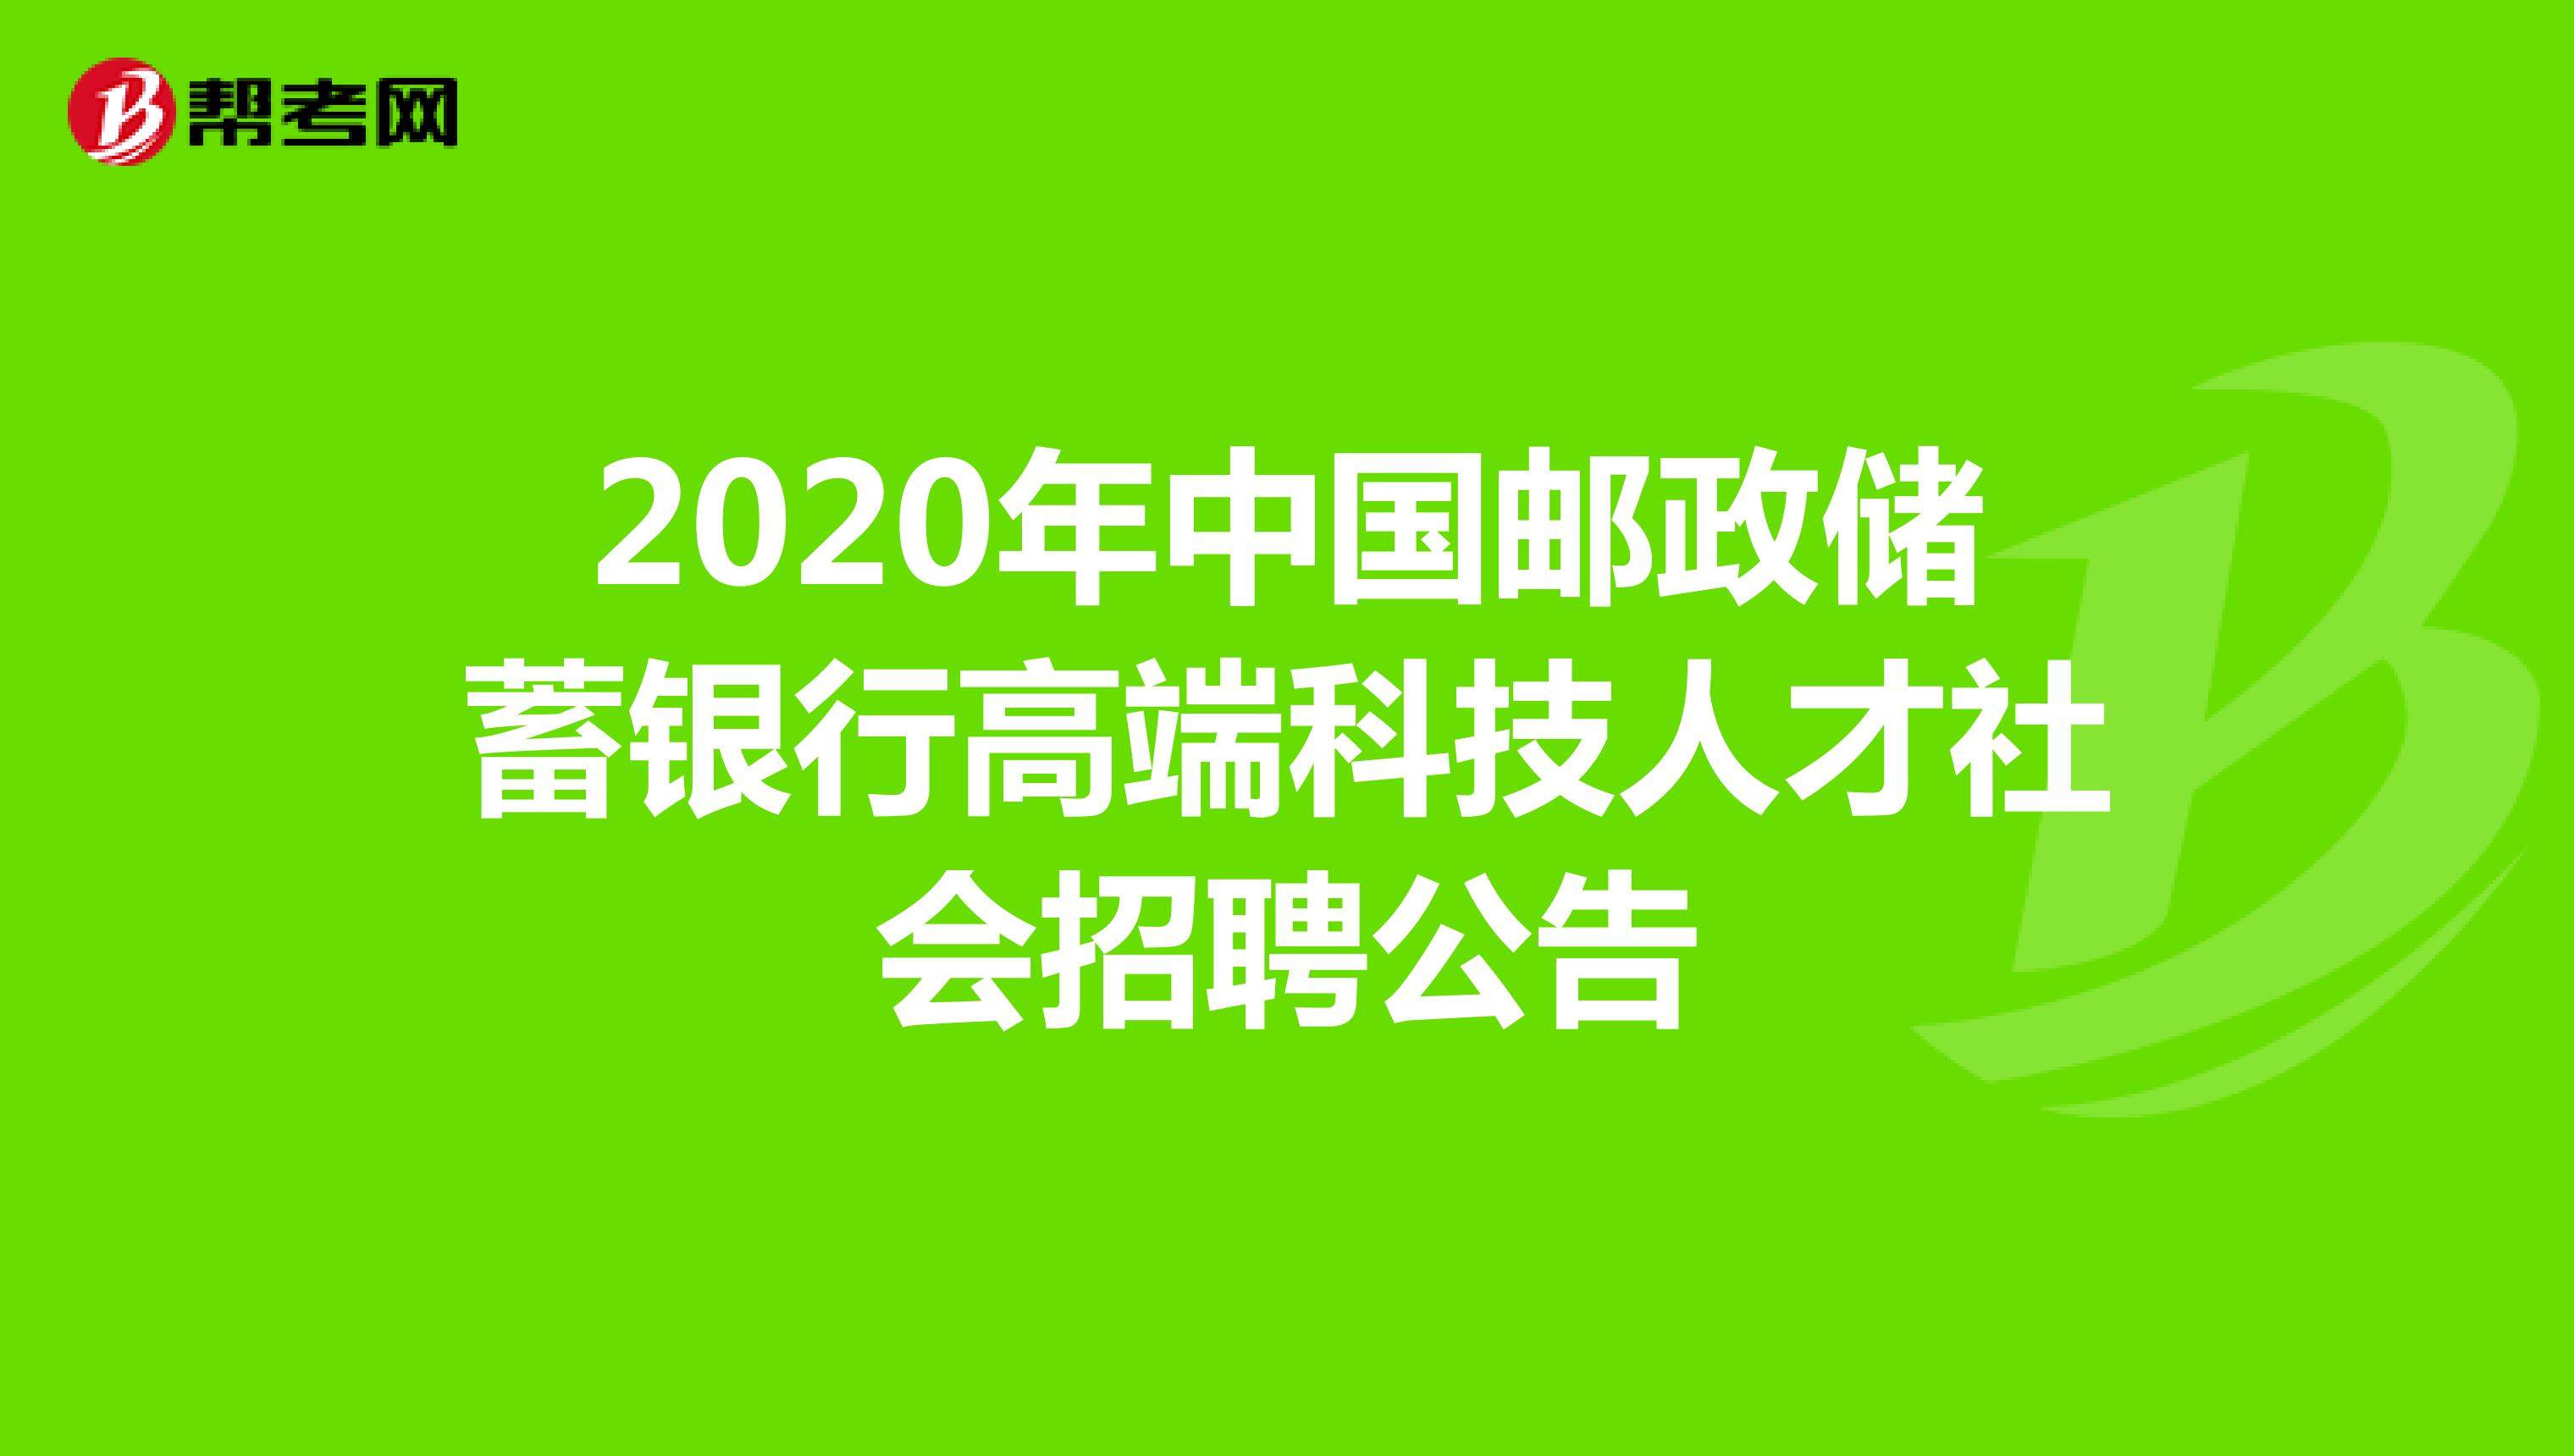 2020年中国邮政储蓄银行高端科技人才社会招聘公告